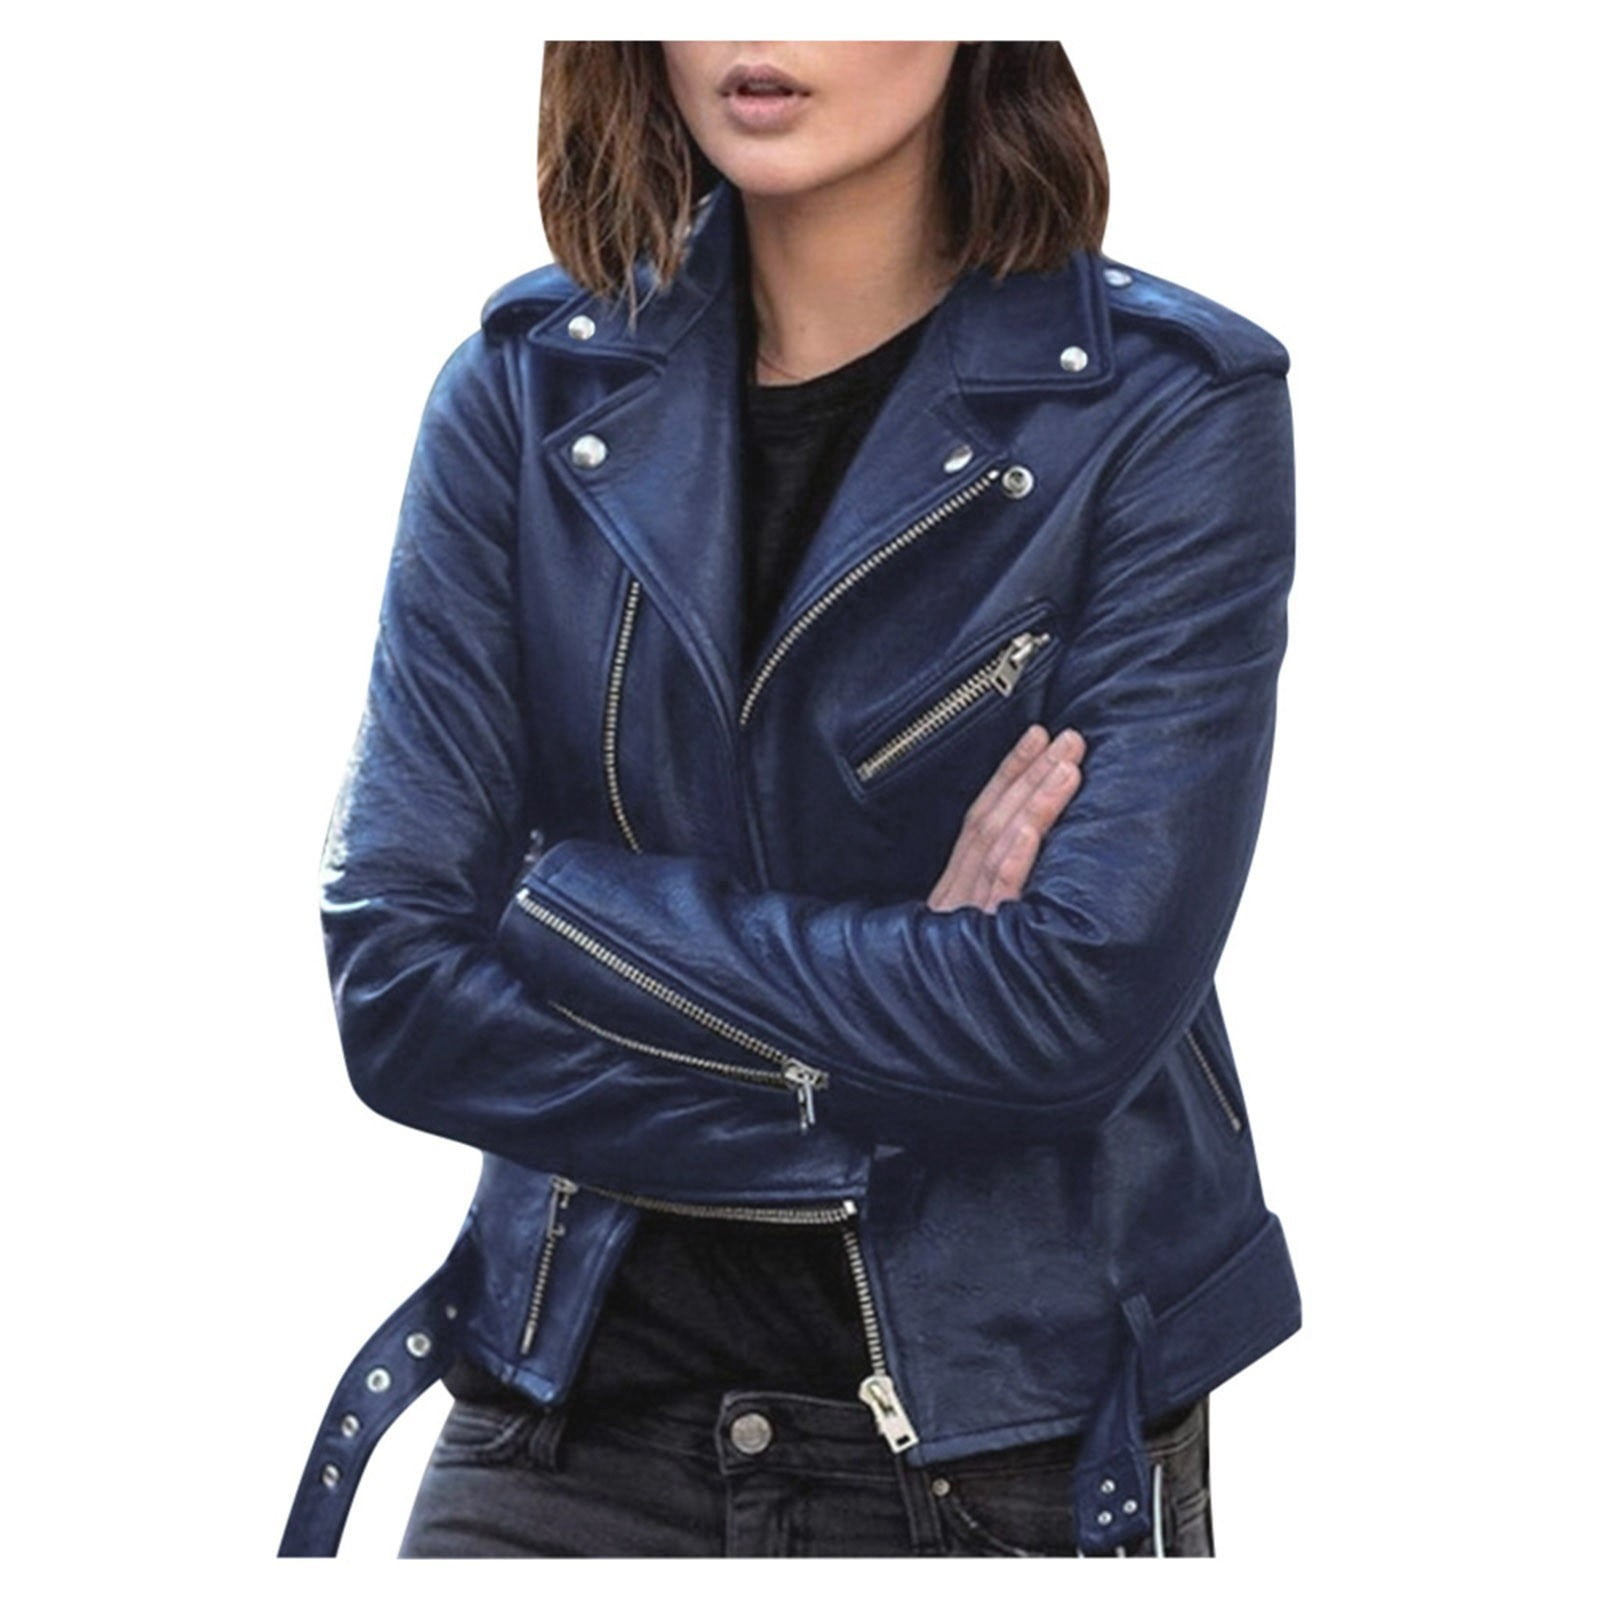 XFLWAM Women Size Fashion Leather Jacket Long Sleeve Zipper Fitted Moto Biker Coat Blue S Walmart.com